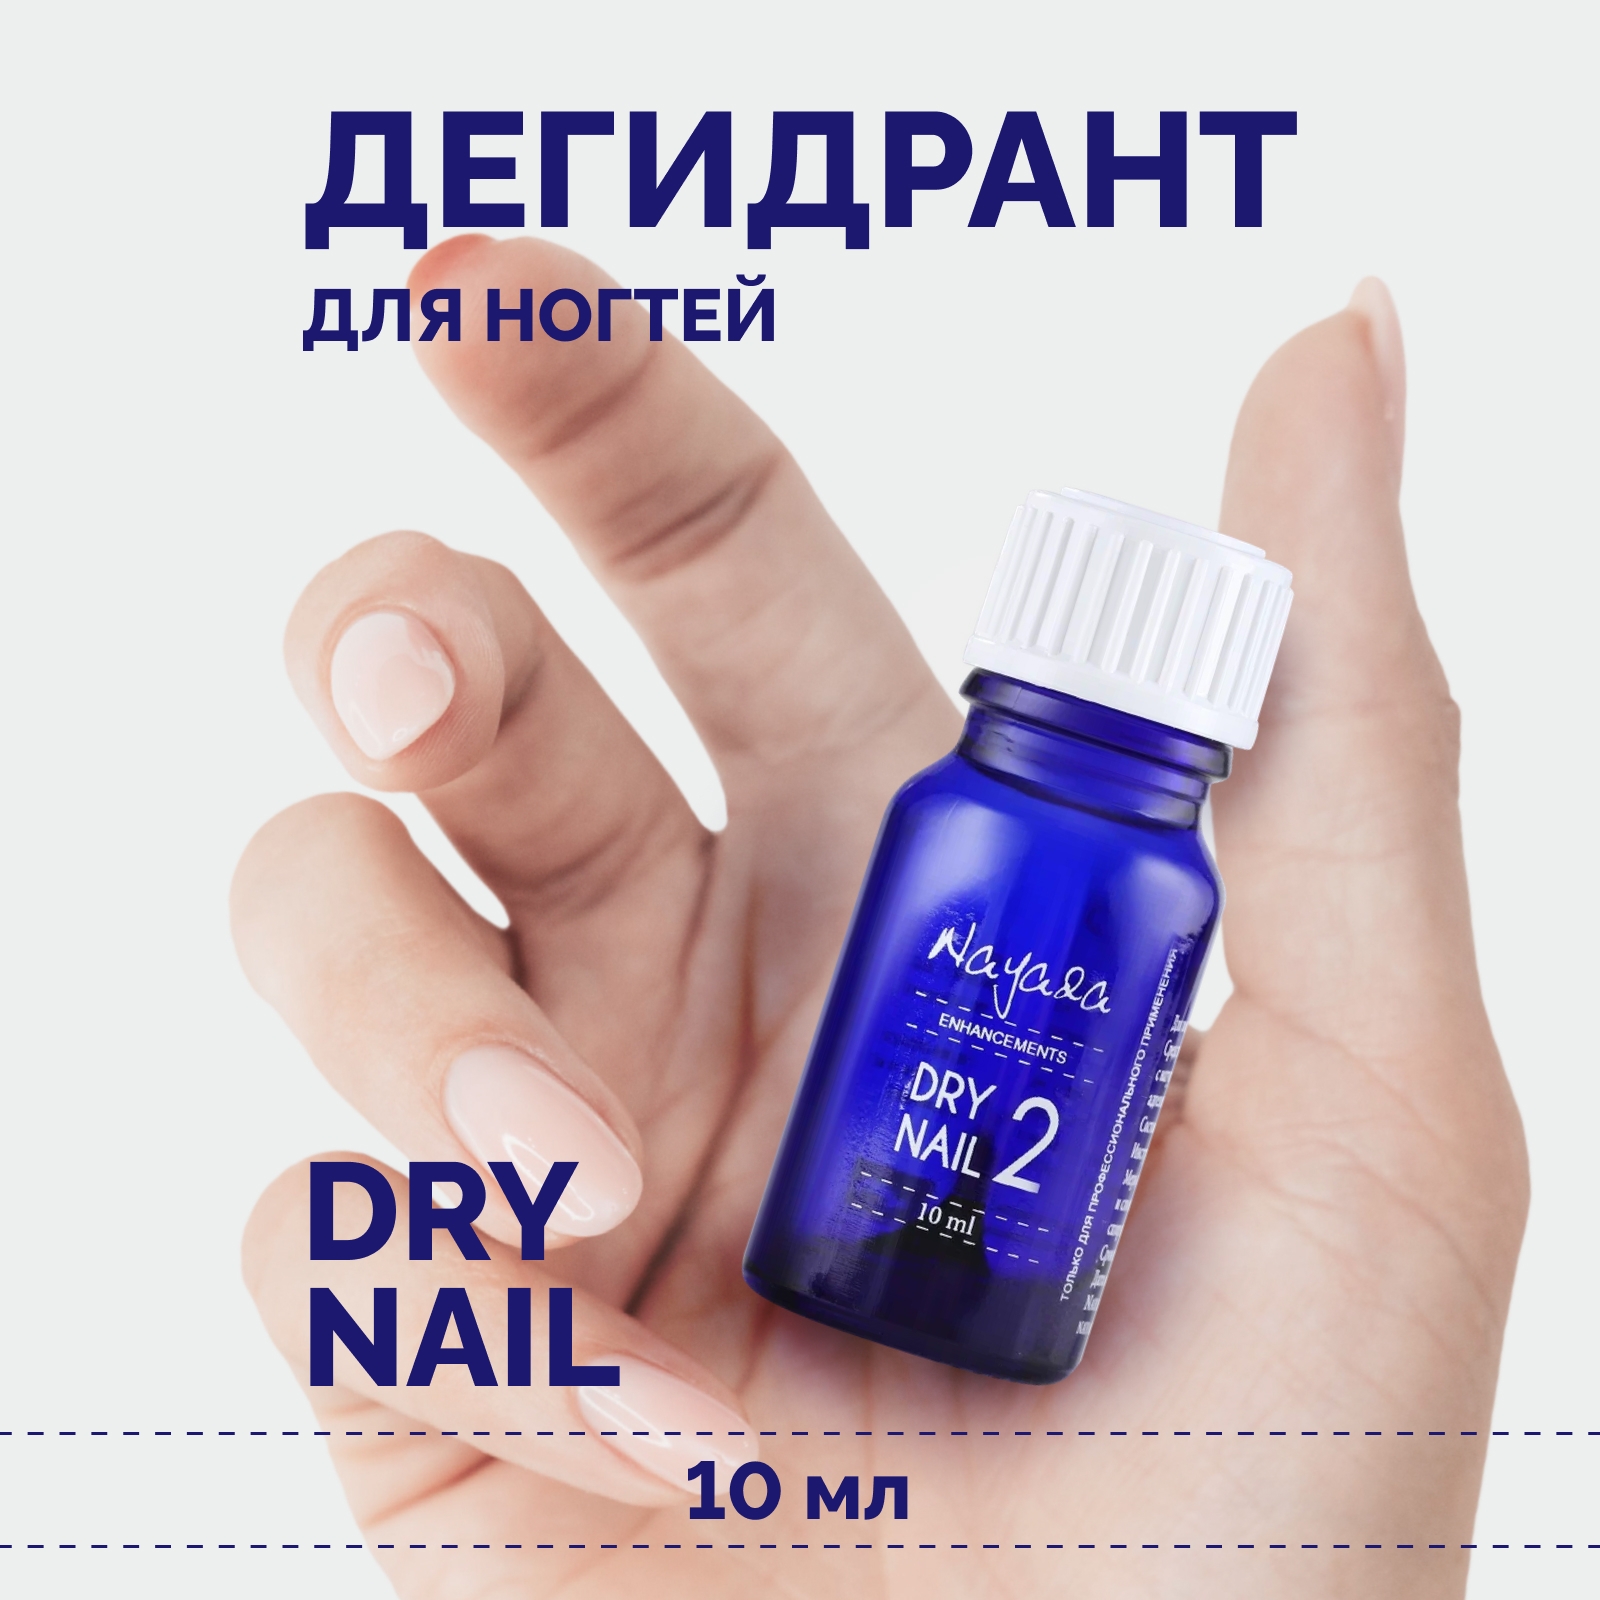 Дегидрант для ногтей Nayada Dry nail обезжириватель, 10 мл